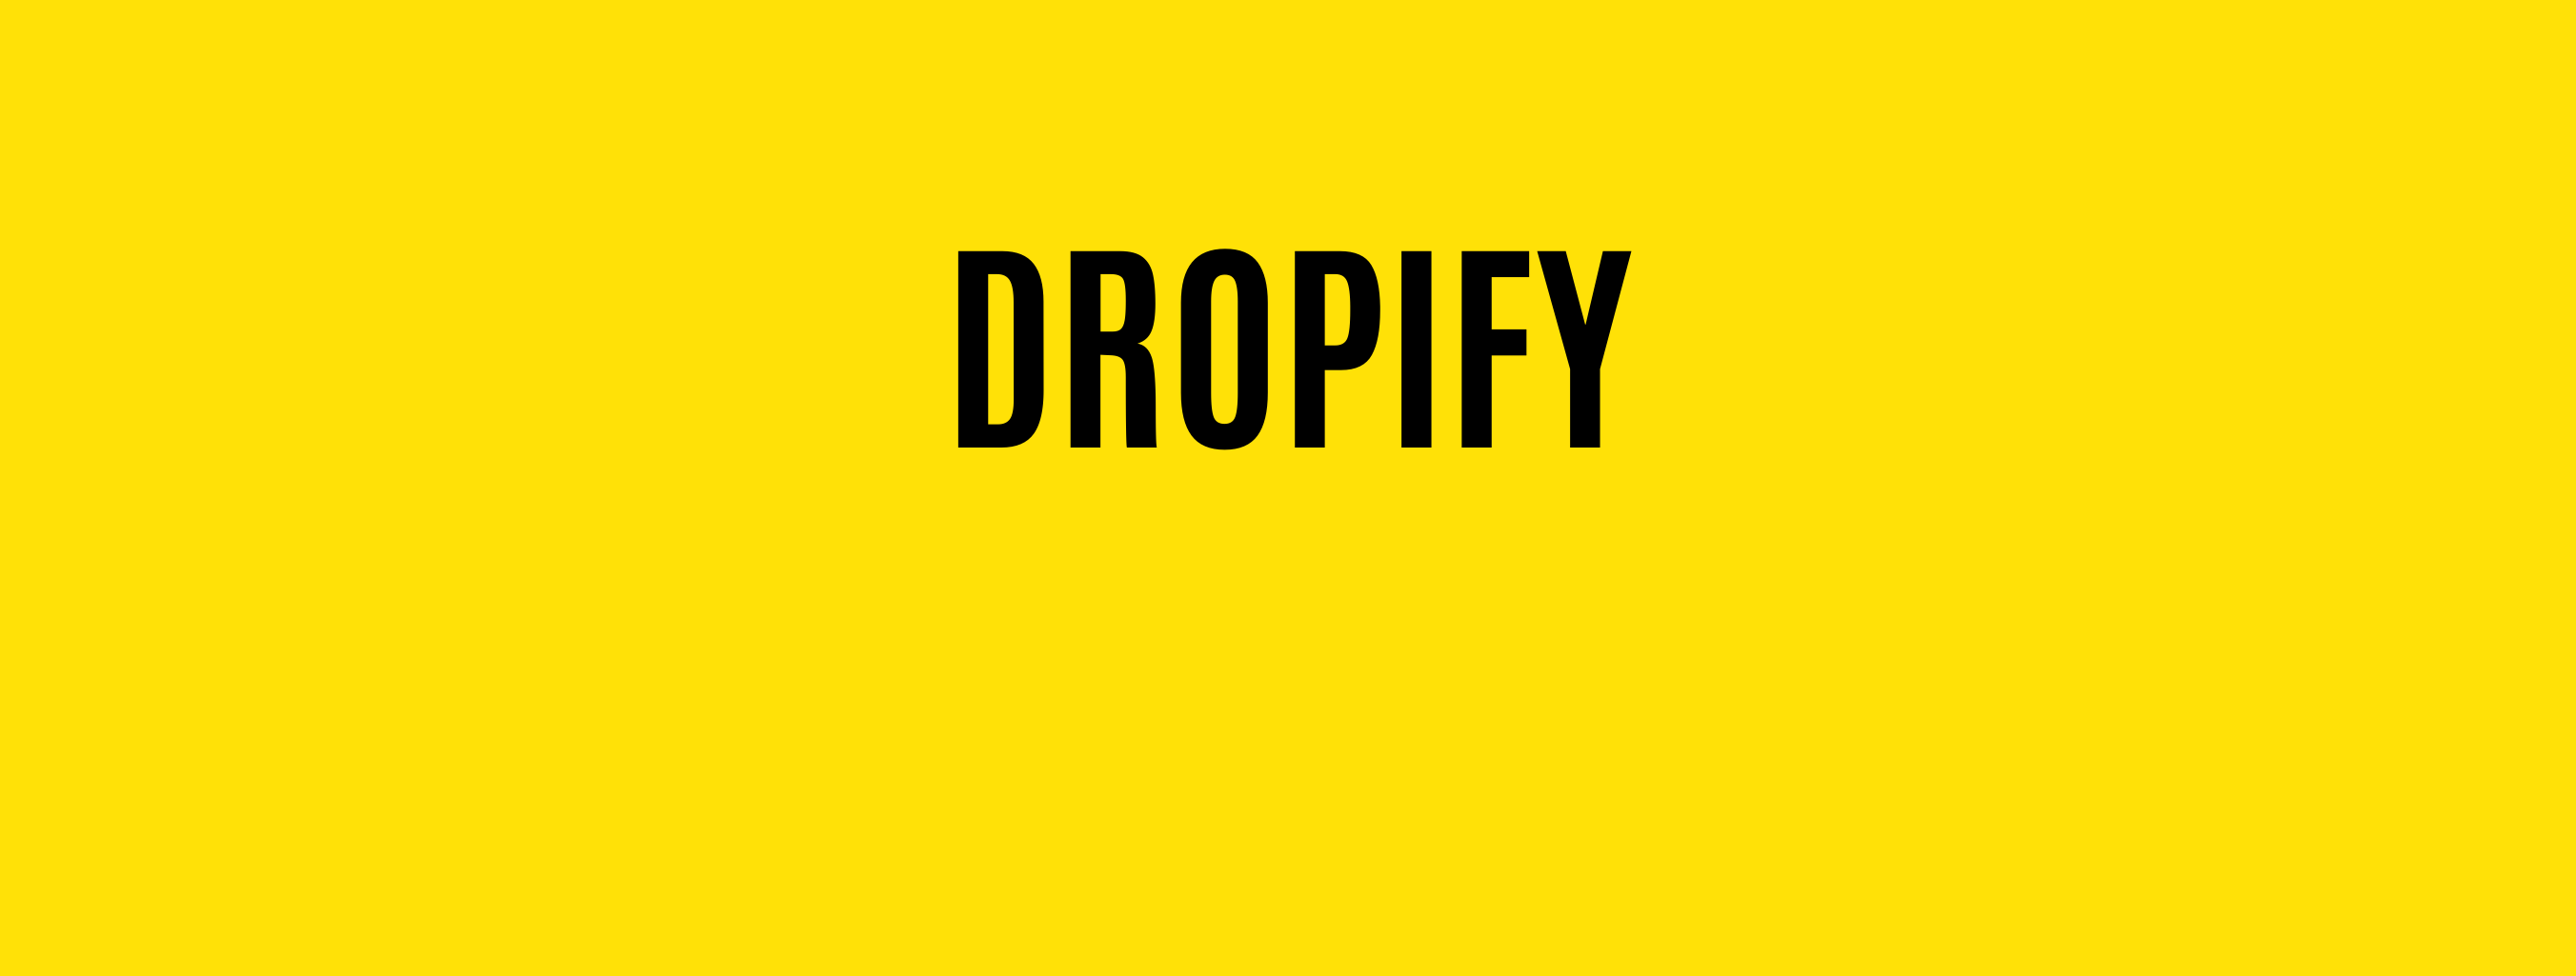 Dropify